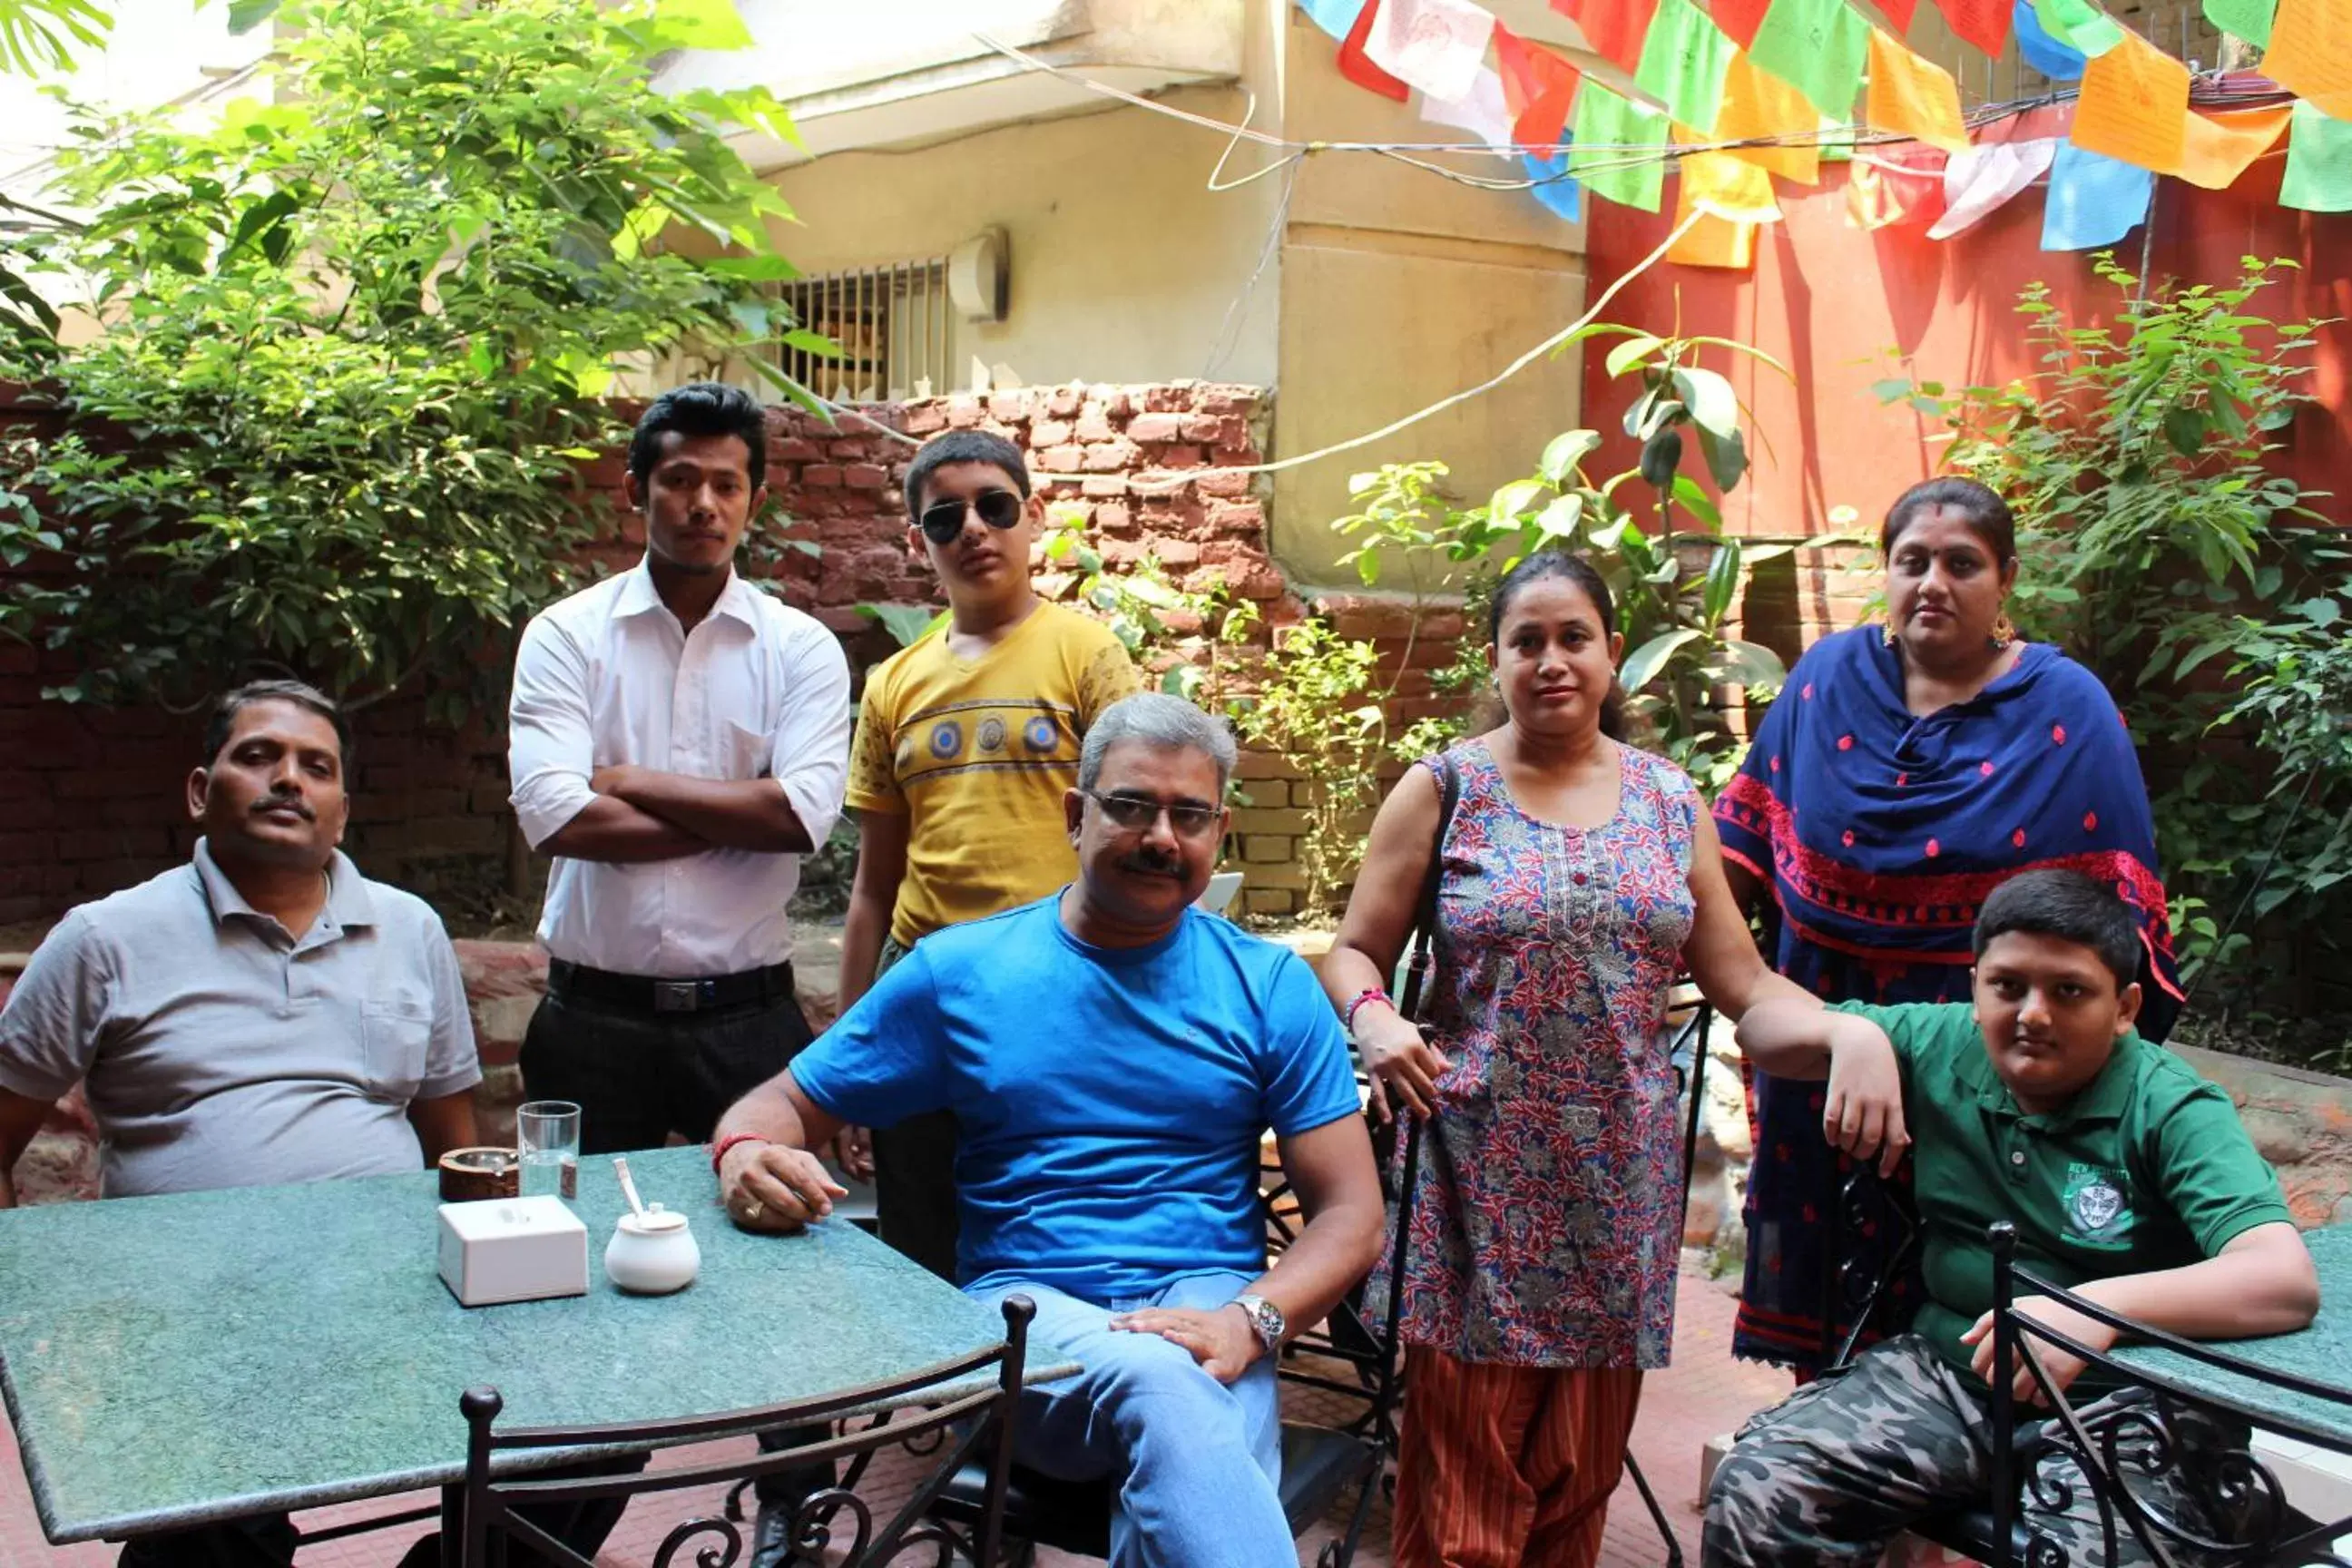 group of guests in Kathmandu Regency Hotel